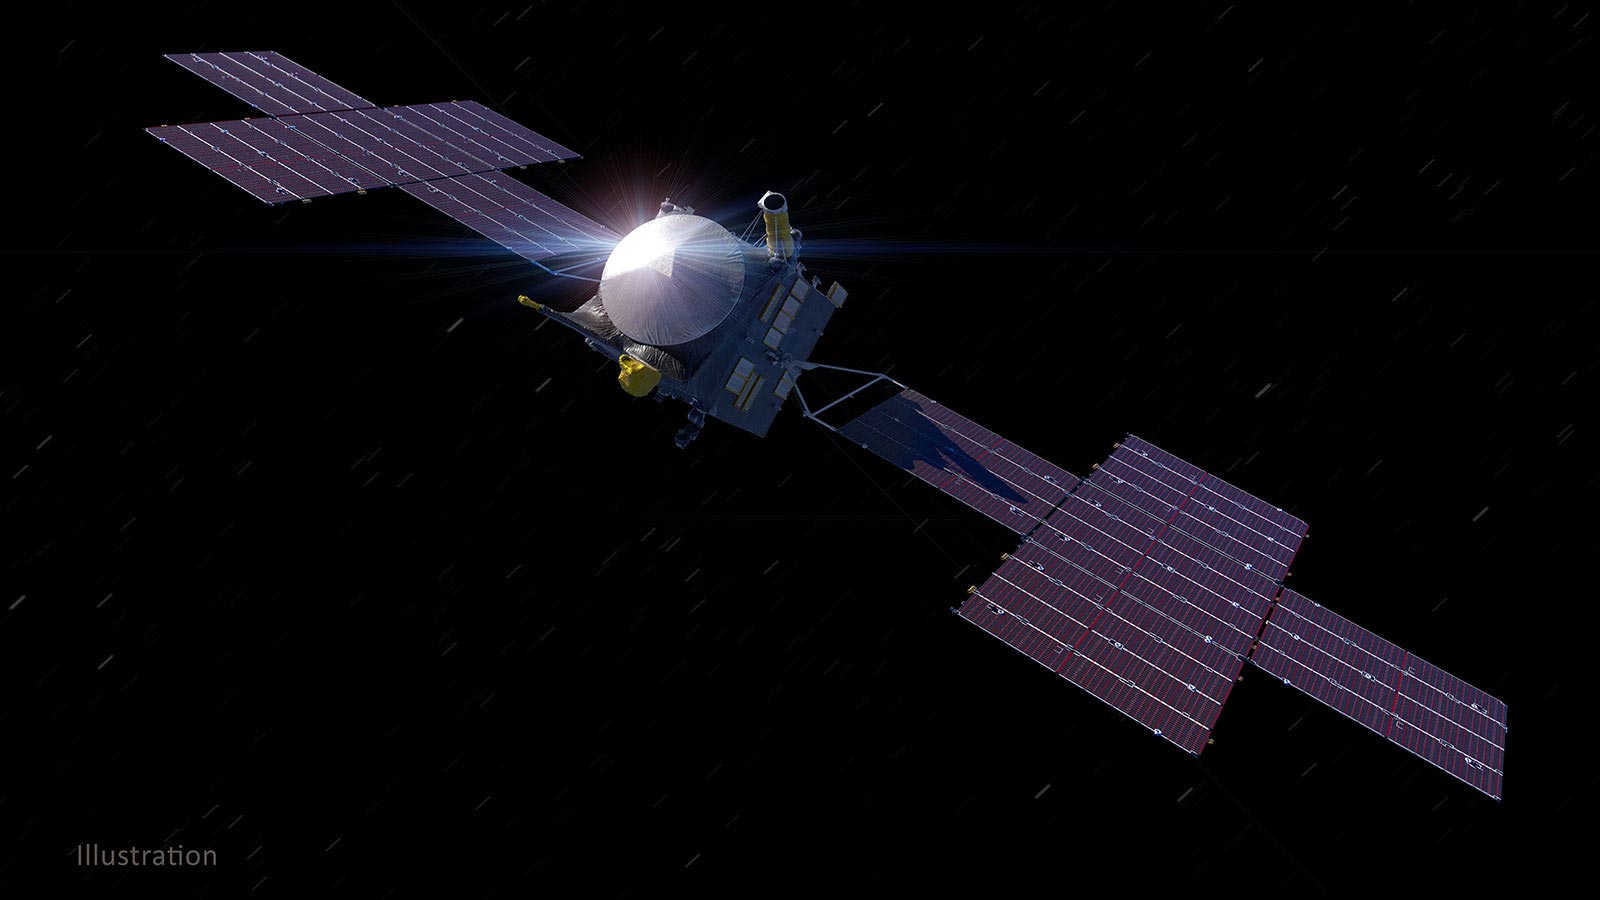 Psychological NASA bekommt riesige Solaranlagen für 1,5 Milliarden Meilen Reise zu einem metallreichen Asteroiden